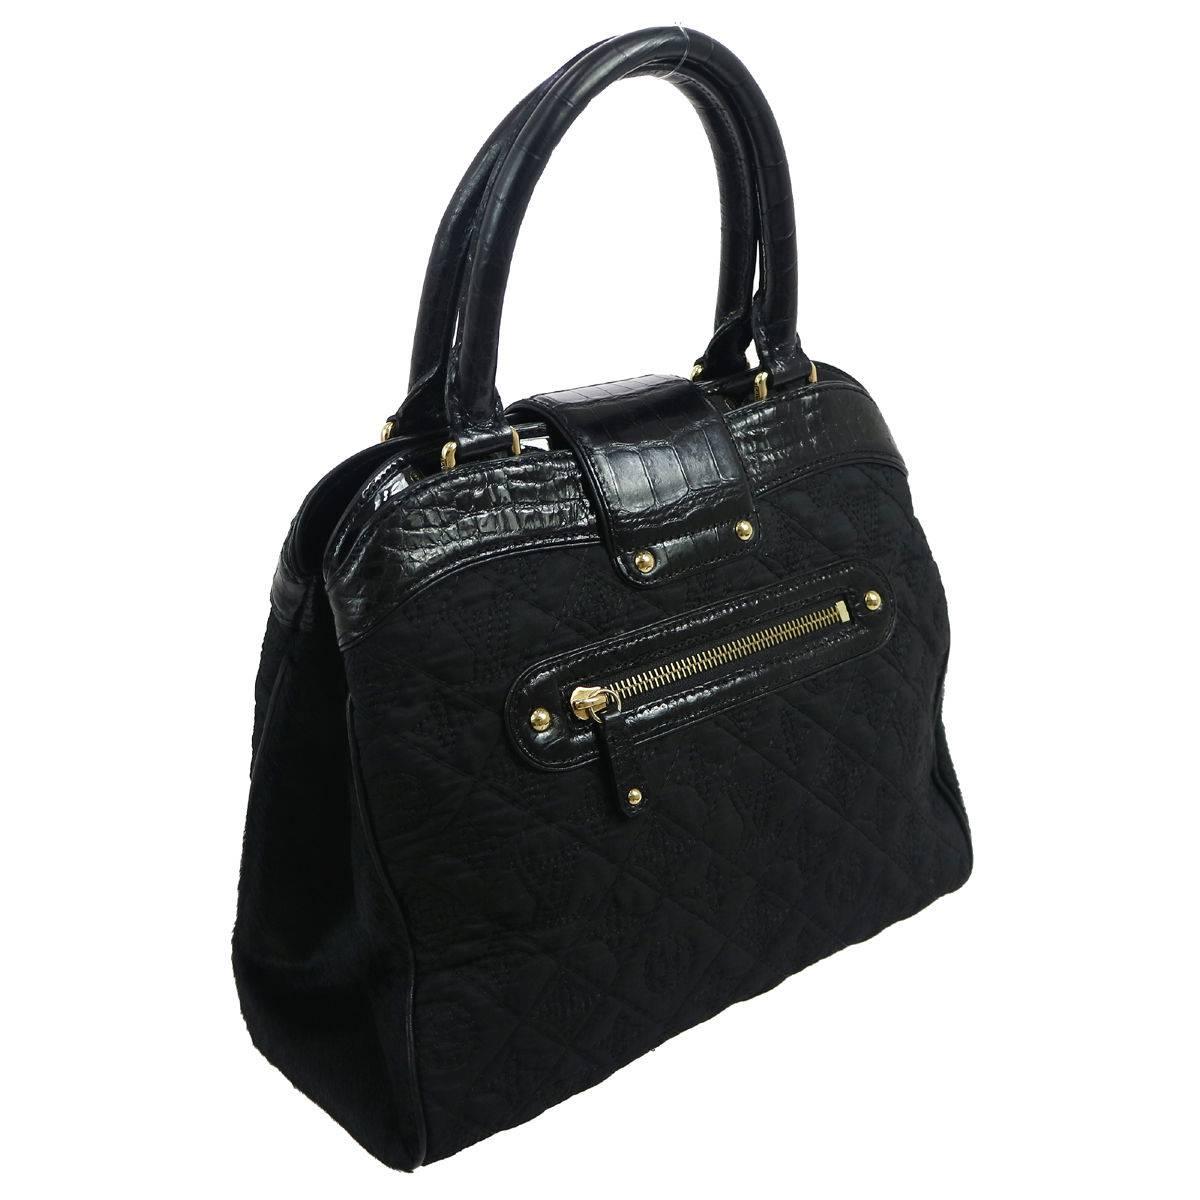 Women's Louis Vuitton Limited Edition Black Top Handle Satchel Evening Bag